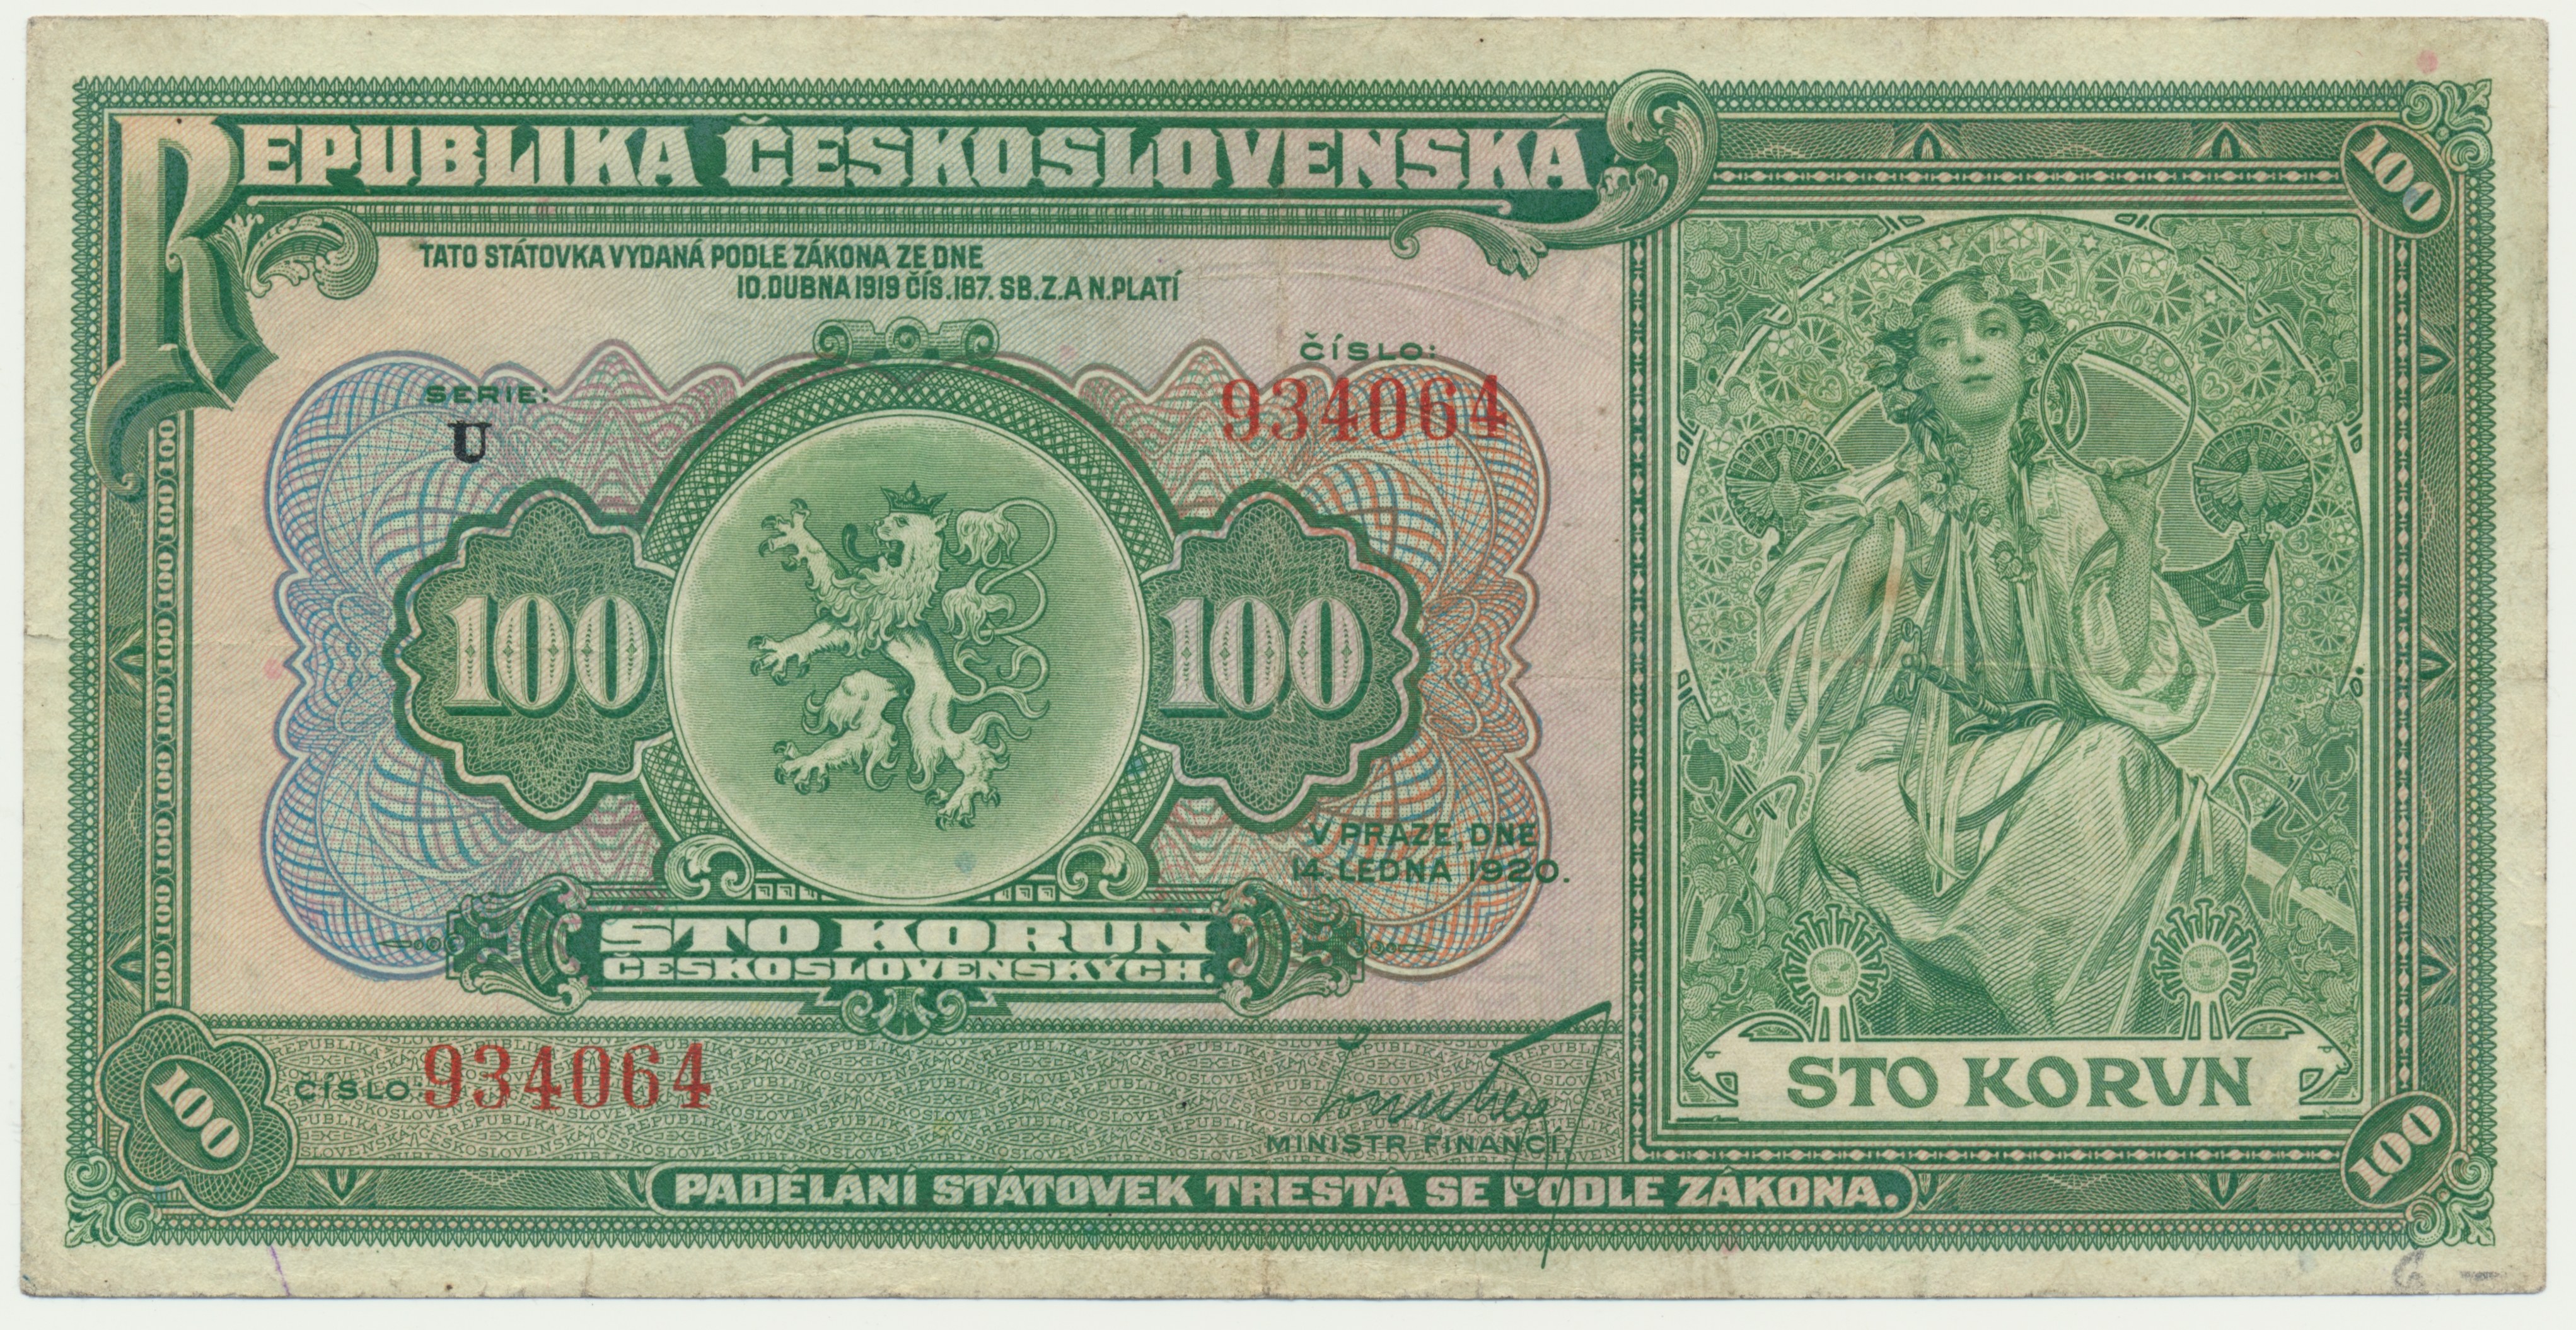 Купюра 8 букв. Банкноты альфонса мухи. 100 Крон Чехословакия банкнота.